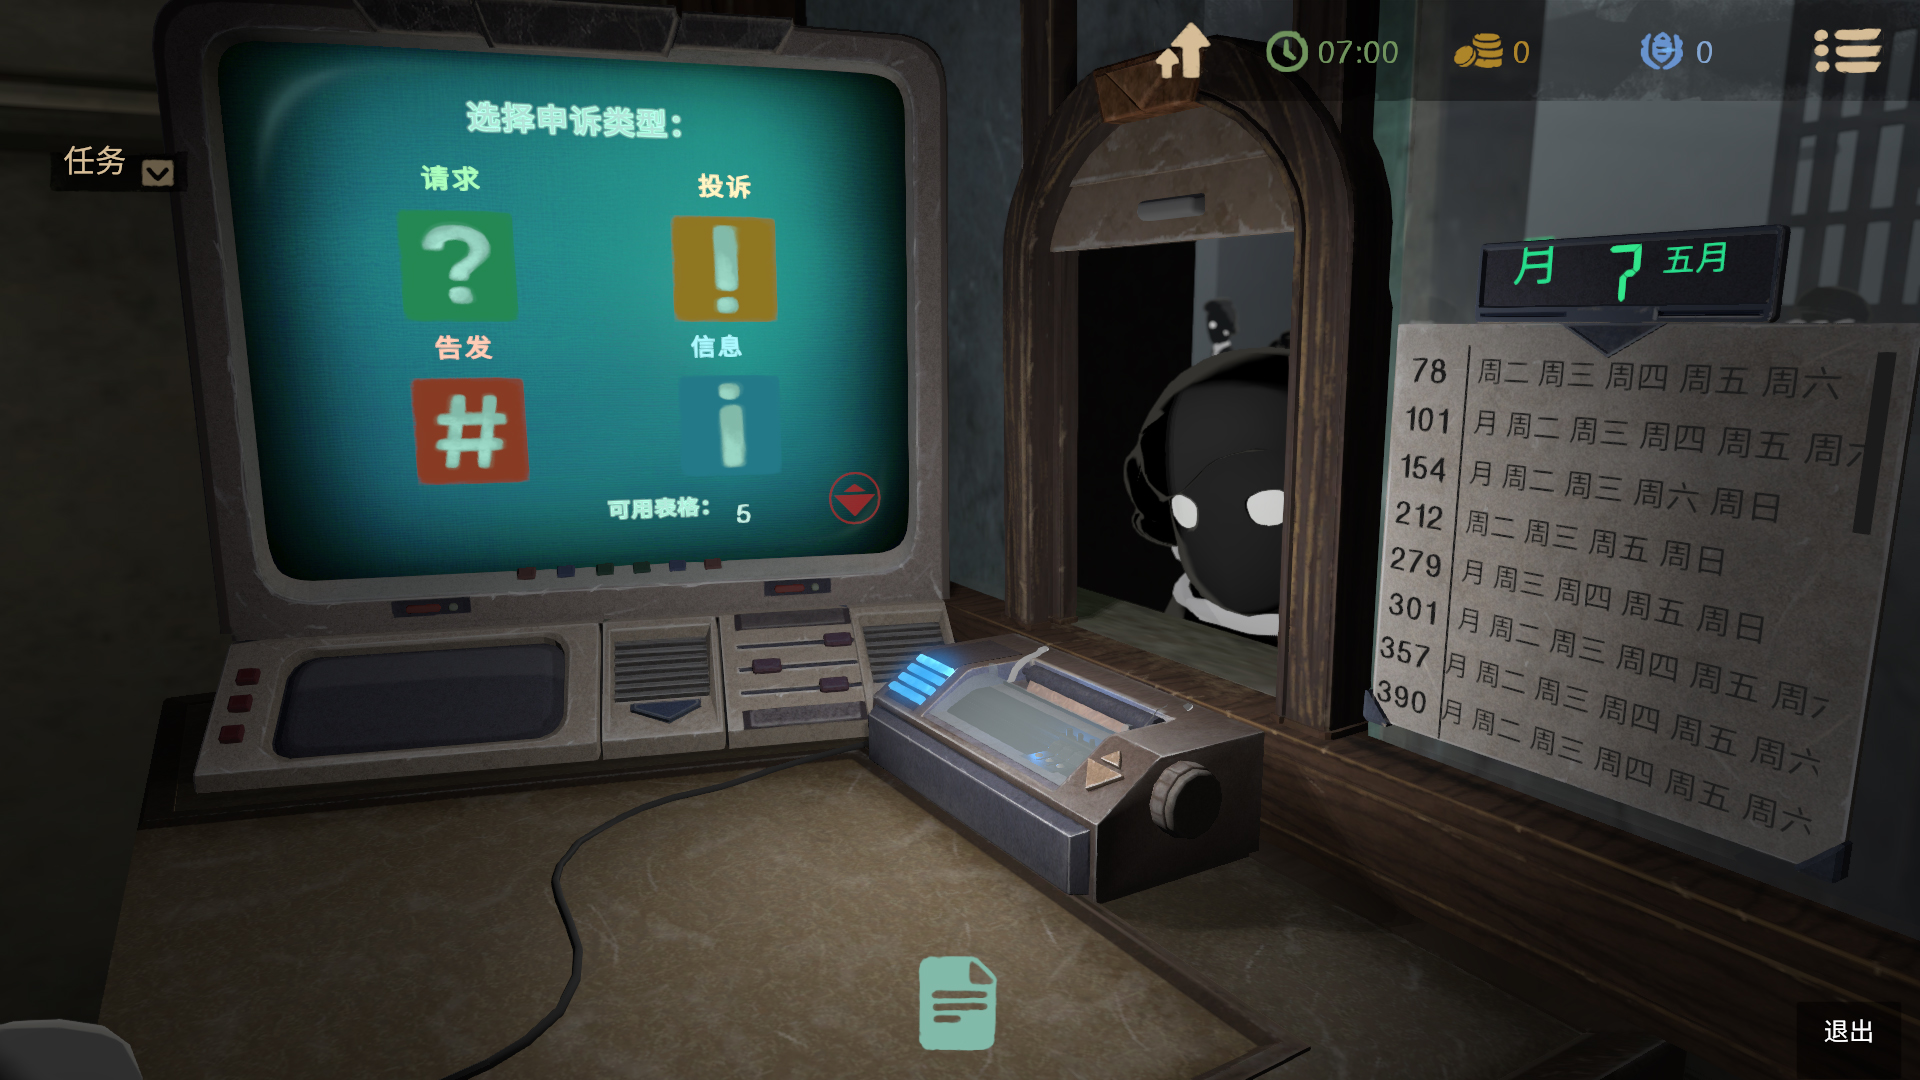 《監視者2》將於12月4日發售 支持簡中字幕及語音